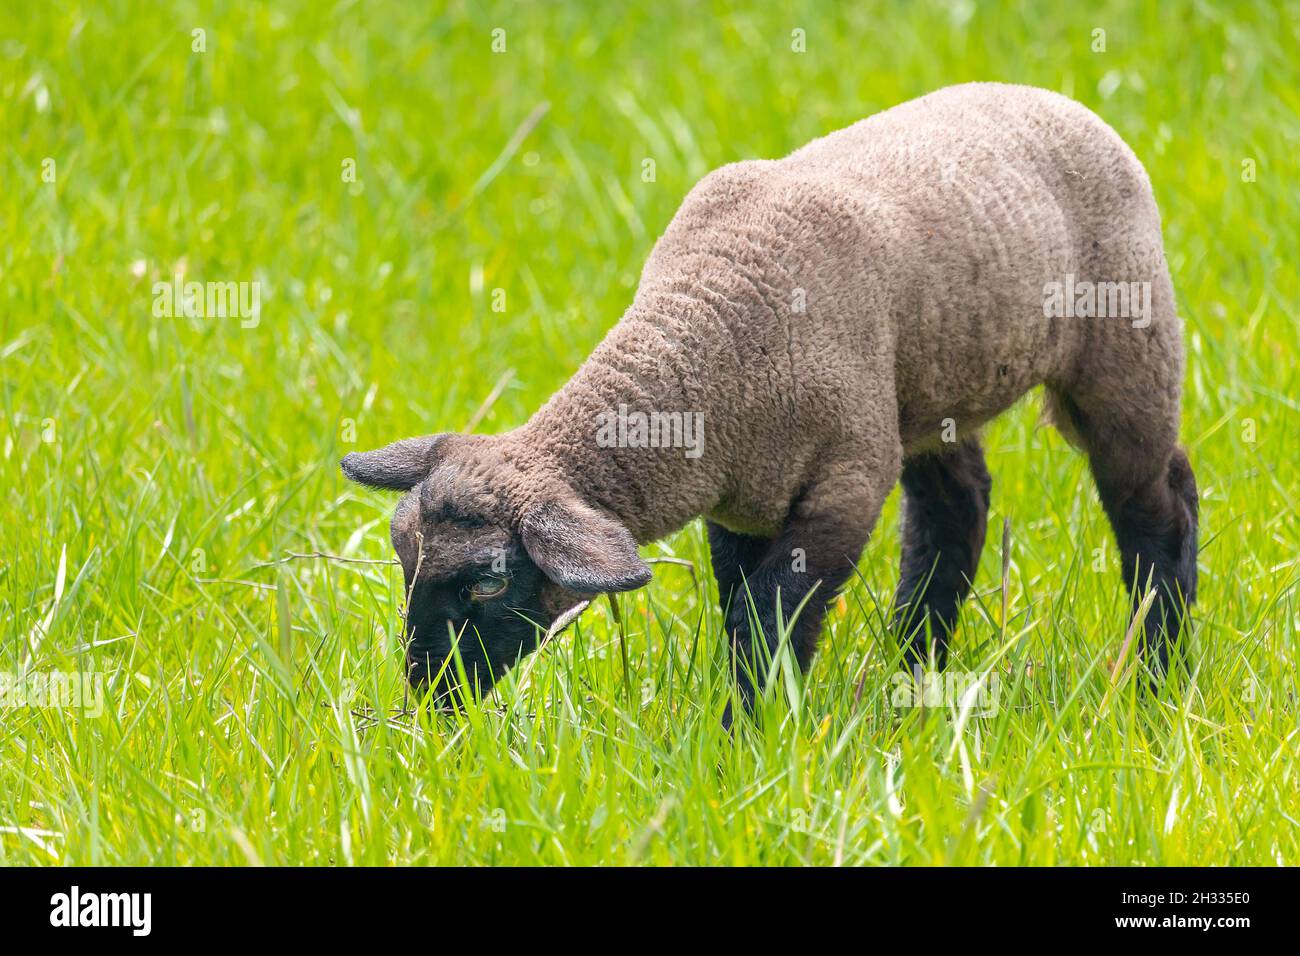 Cordero en la hierba - oveja Suffolk en la pastura, vista lateral Foto de stock